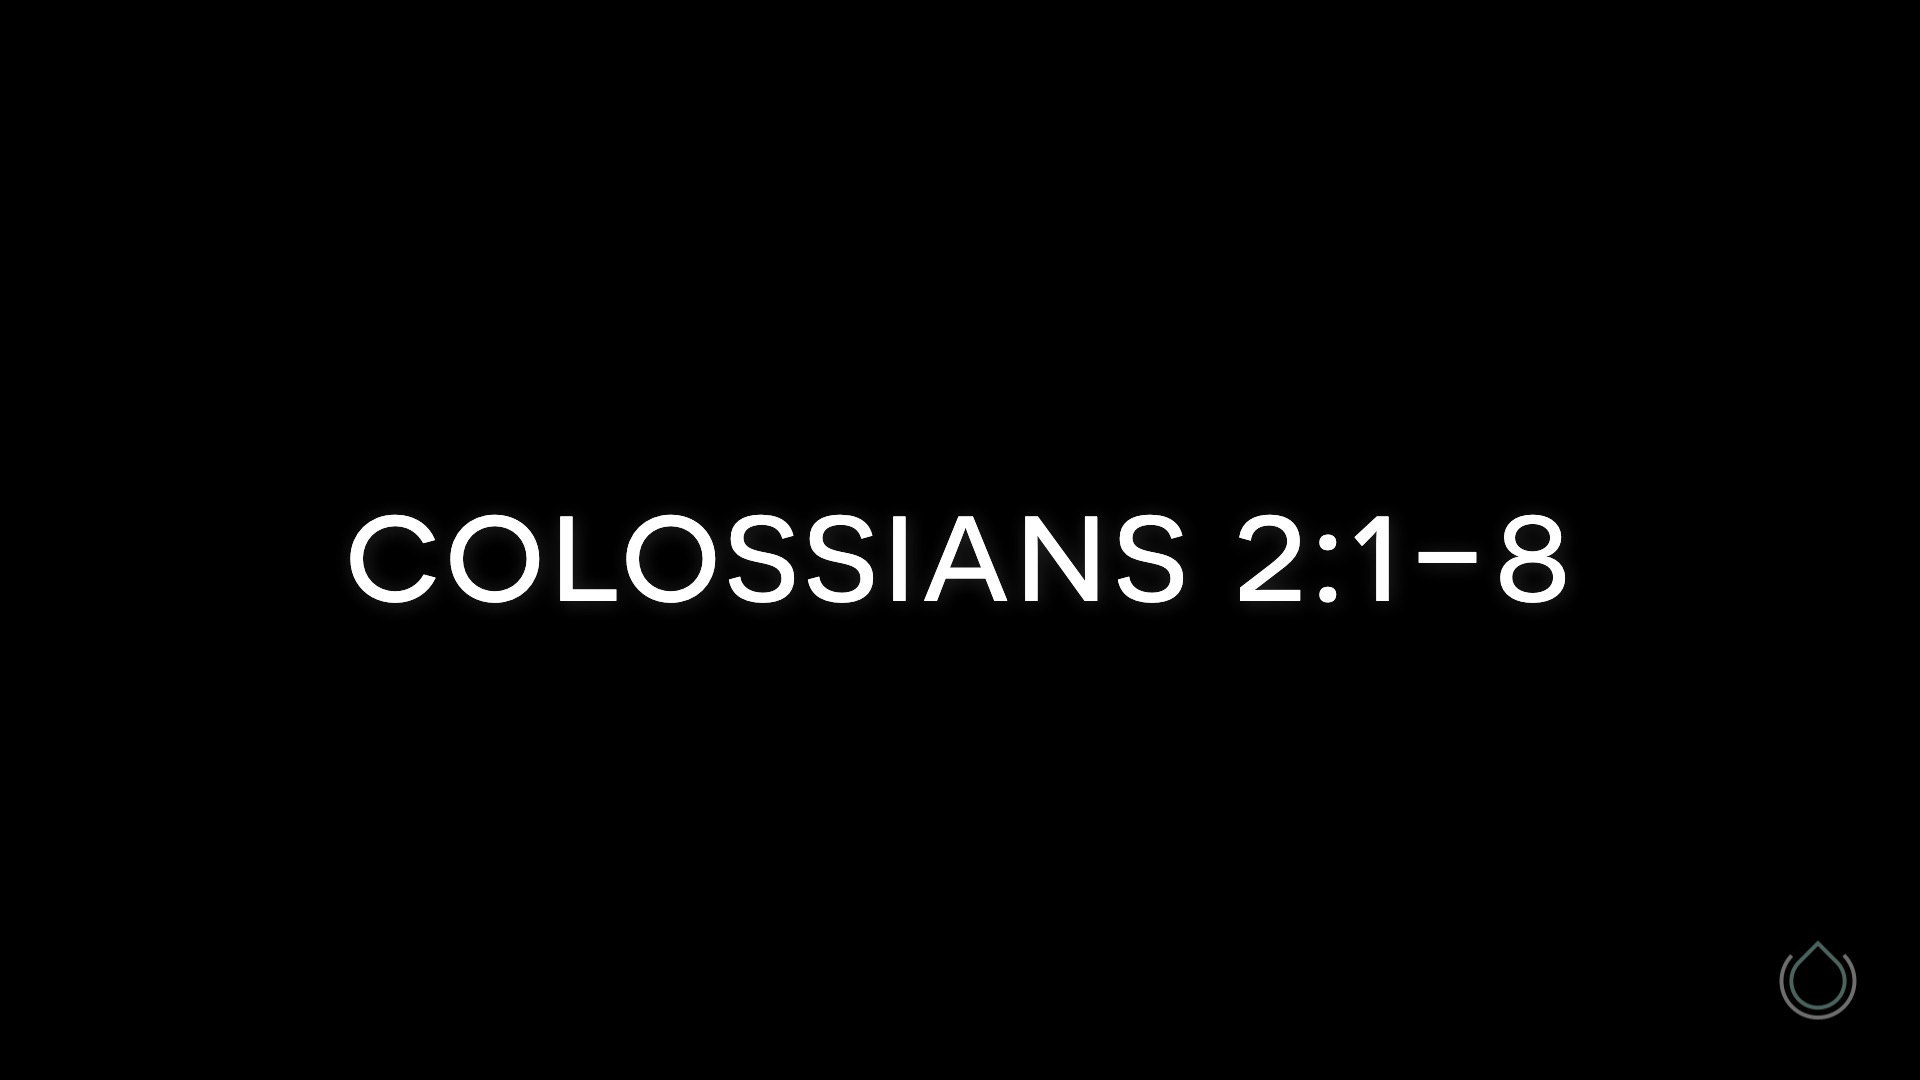 Colossians 2:1-8